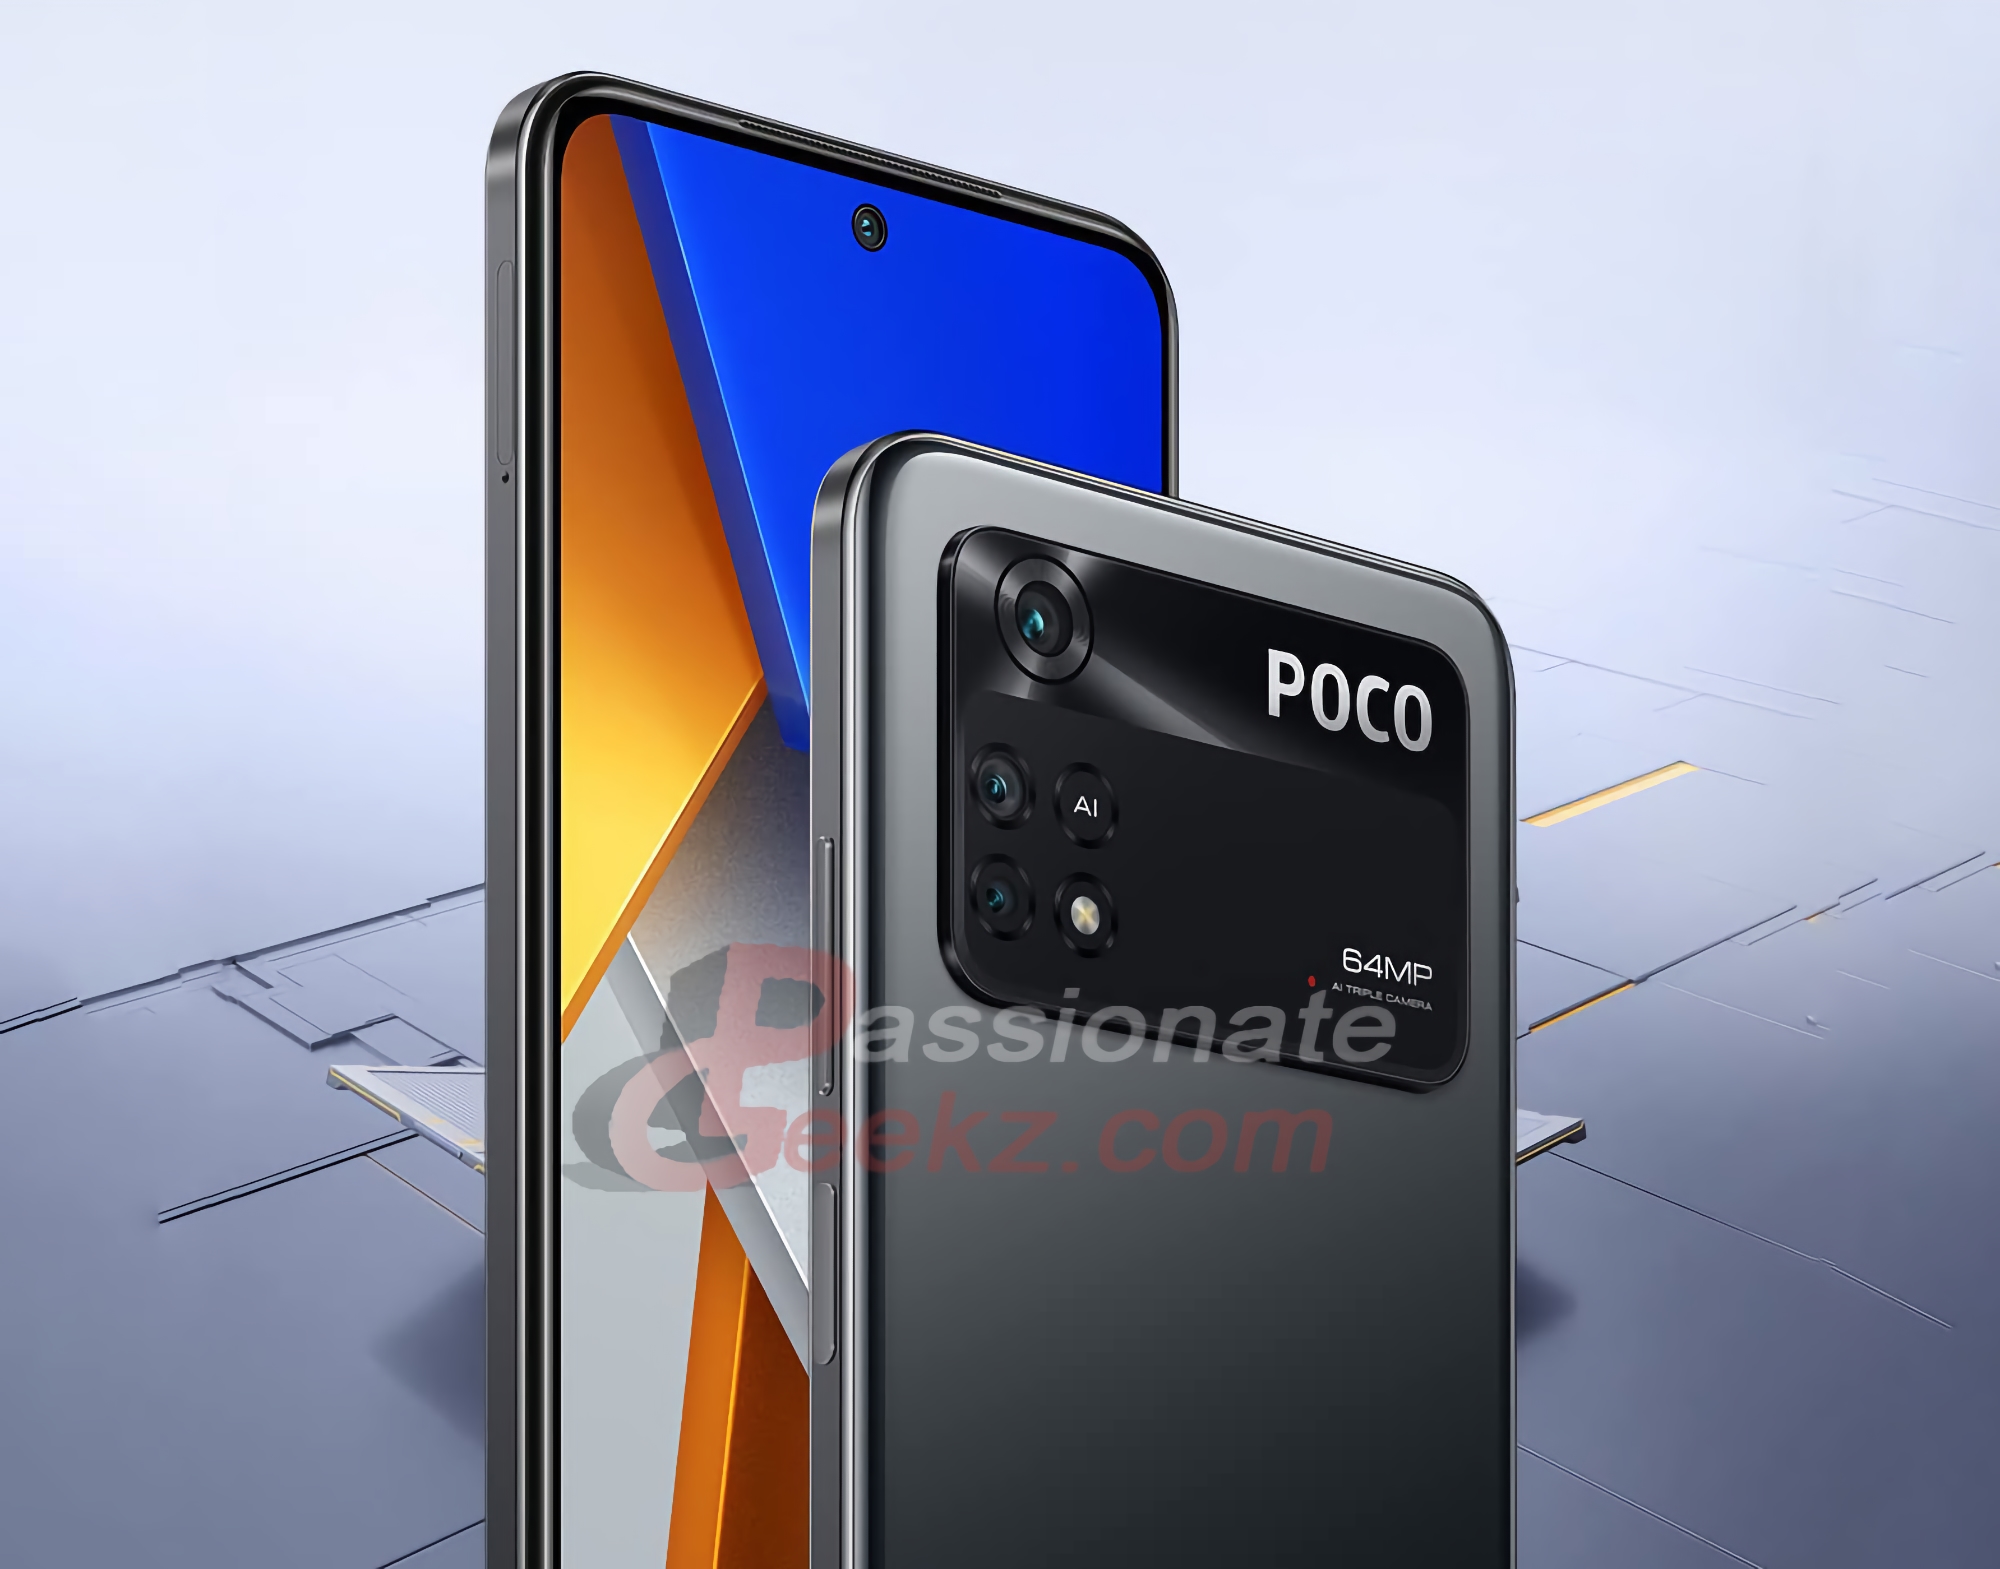 Ecco come sarà POCO M4 Pro 4G: uno smartphone con schermo a 90 Hz, chip Helio G96 e batteria da 5000 mAh